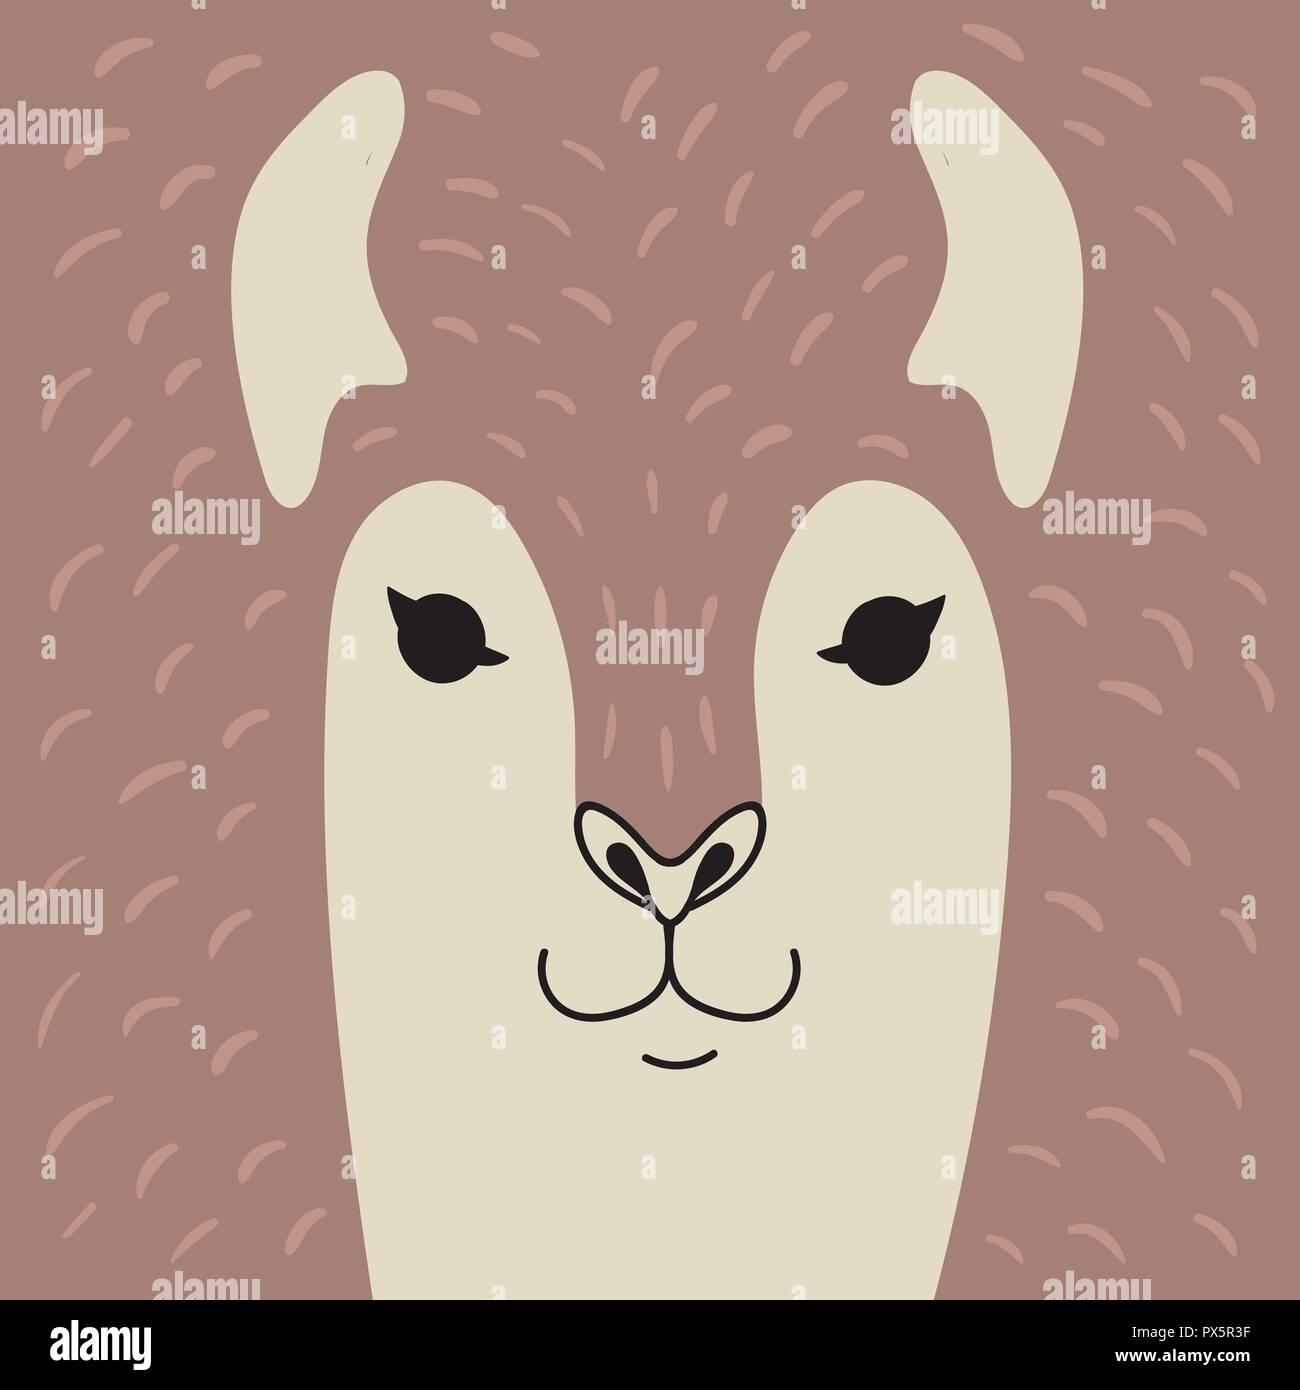 Cute dibujos animados de alpaca retrato animal con rostro sonriente marrón cacao cabeza de animal Tarjeta con ilustración vector espacial de copia Ilustración del Vector